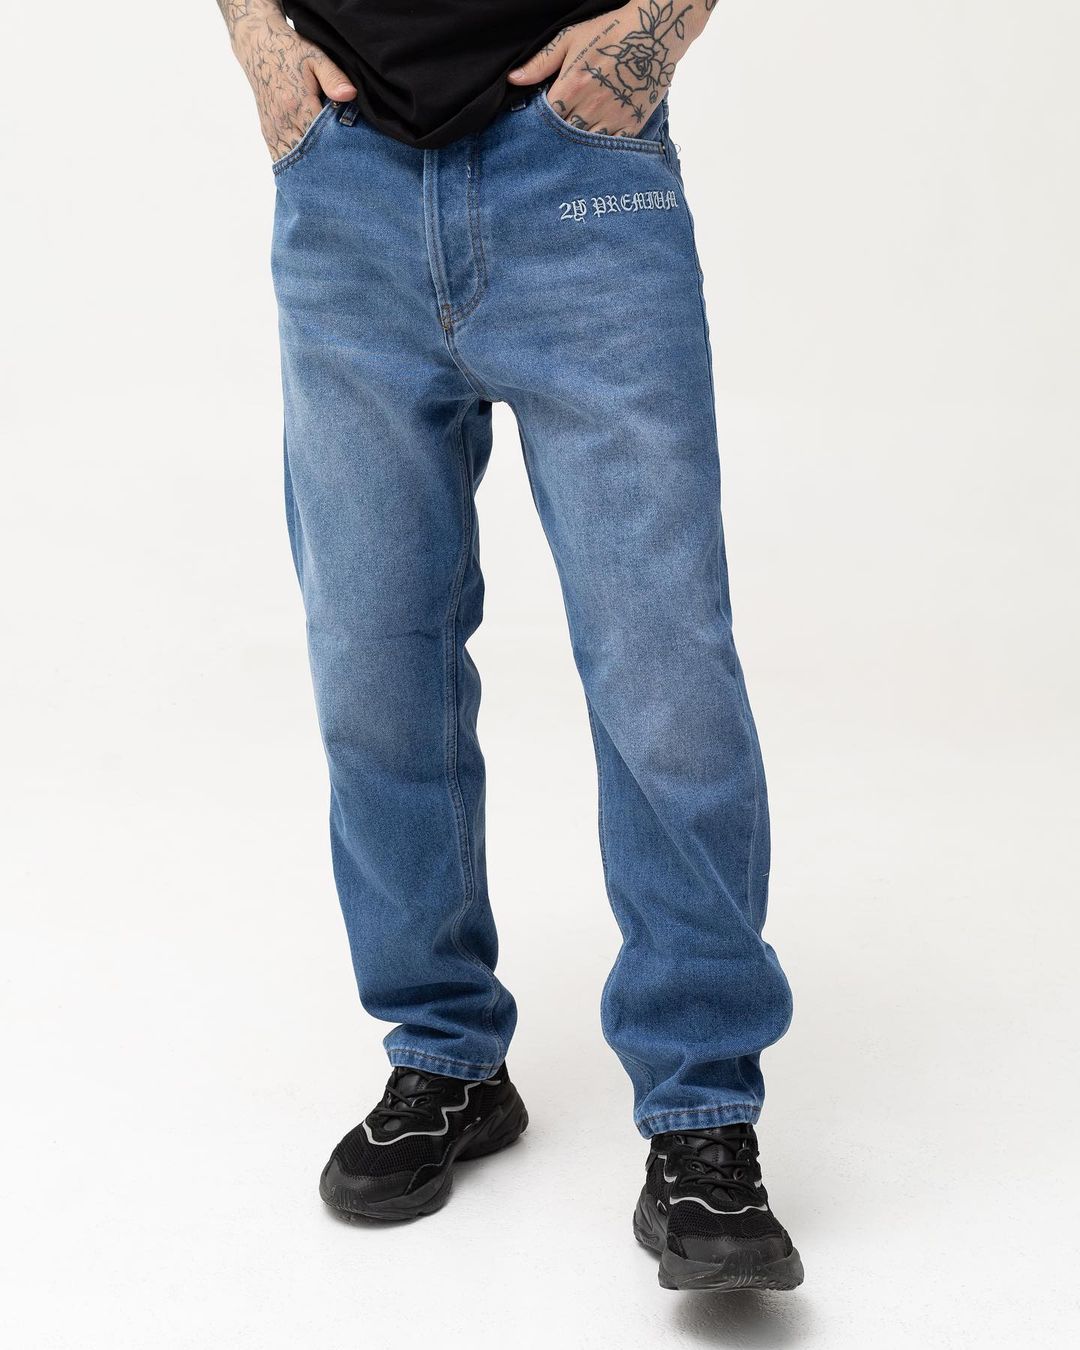 Мужские синие джинсы BEZET базовые с вышивкой - Фото 4